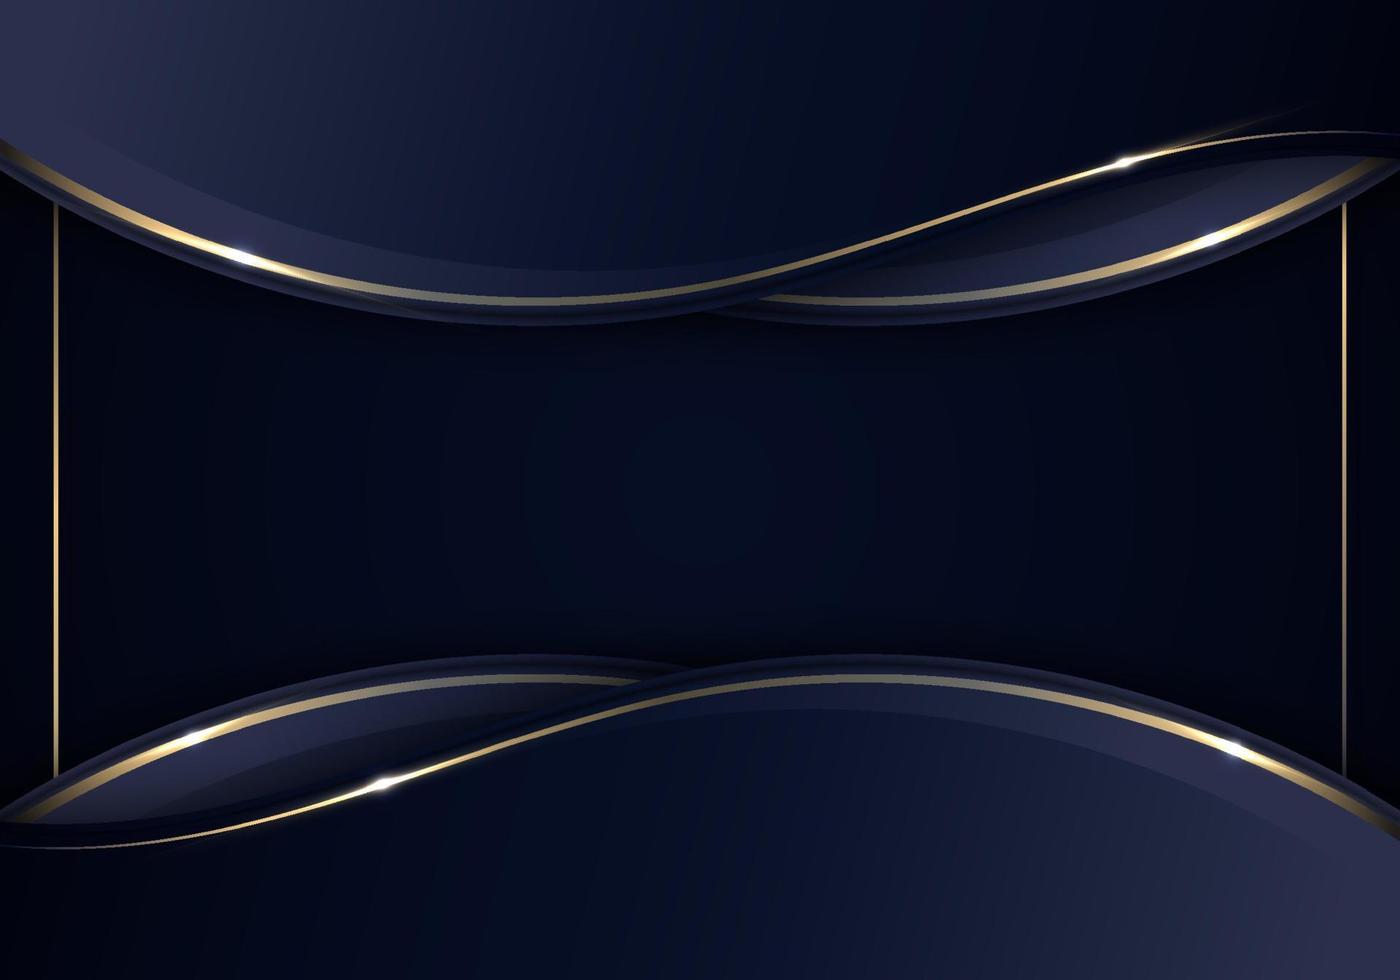 banner web template abstrakte blaue und goldene welle geschwungene linien überlappende schicht mit goldrahmendesign vektor